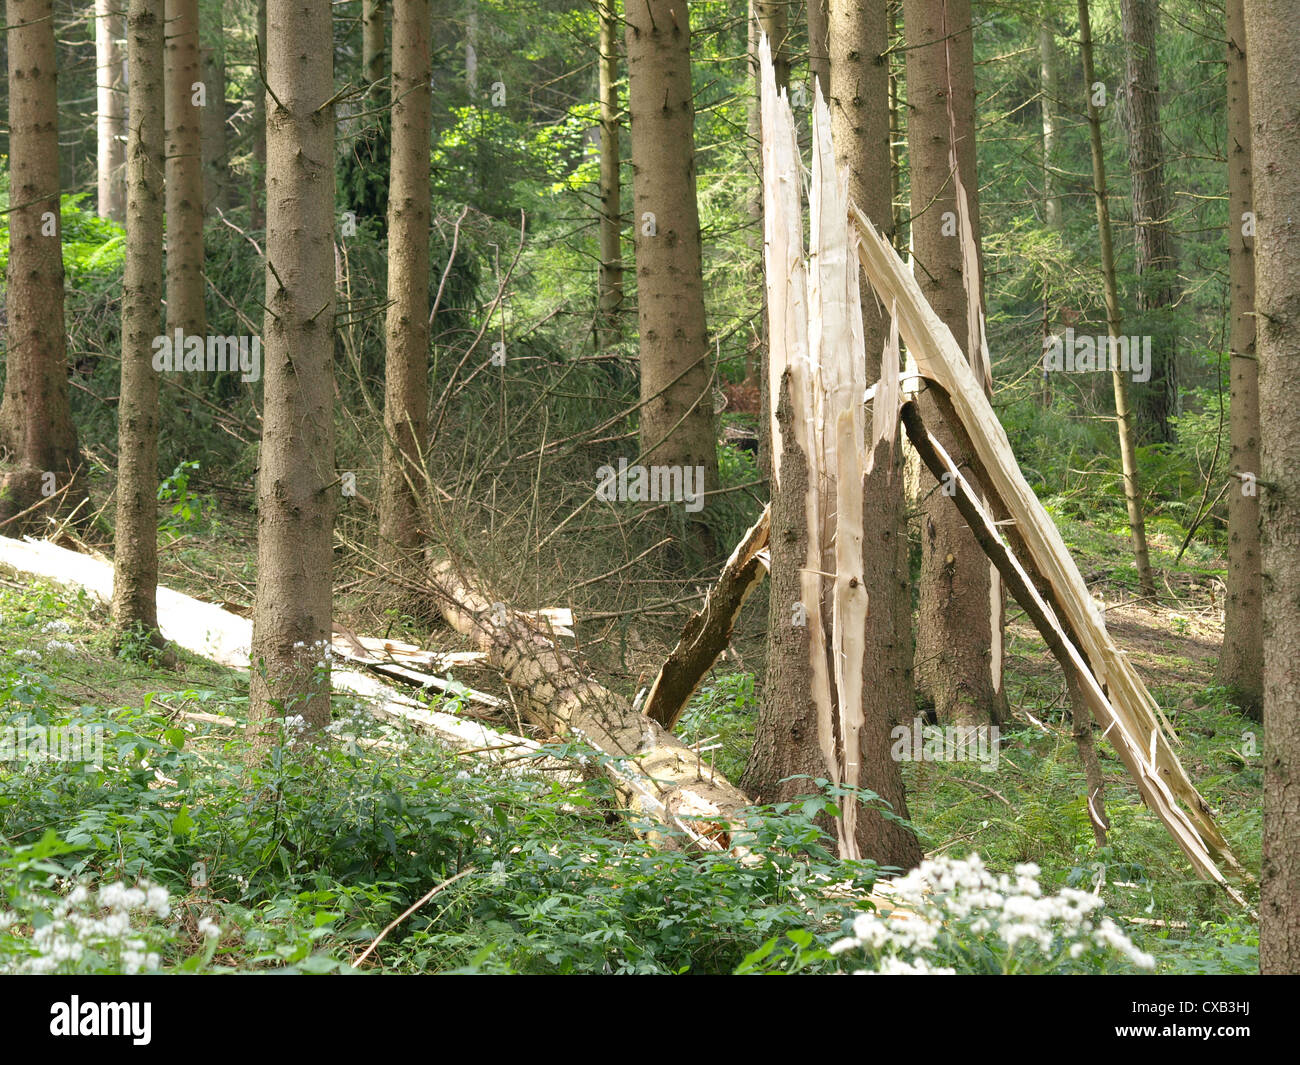 Il fulmine foratura da un albero / Zerstörung eines Baumes durch Blitzeinschlag Foto Stock